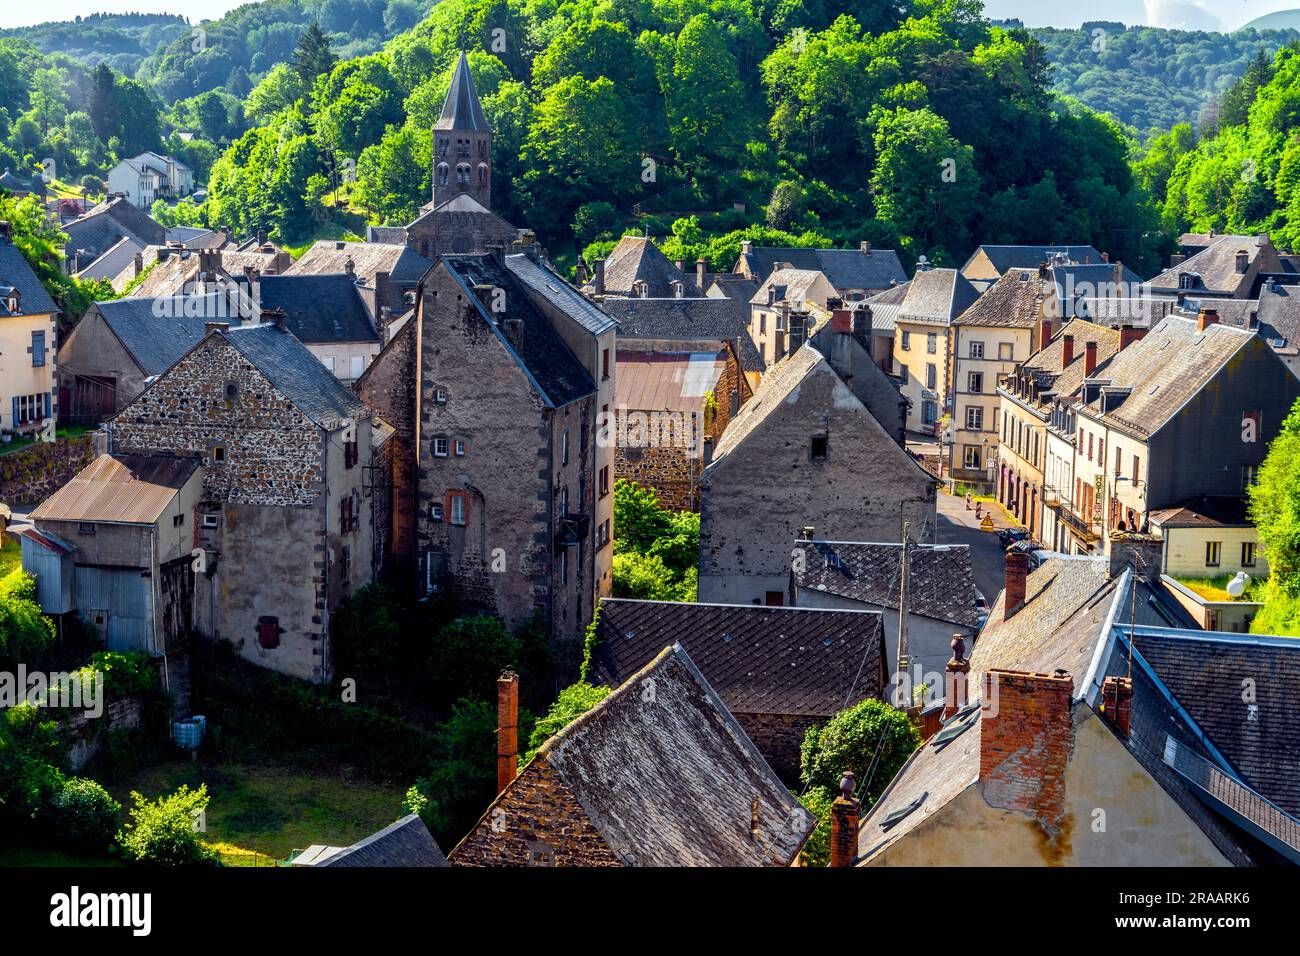 Vue imprenable sur la petite ville de Rochefort-montagne, France. Saint-Martin est une commune française, située dans le département du Puy-de-Dôme et la région Auvergne. Banque D'Images